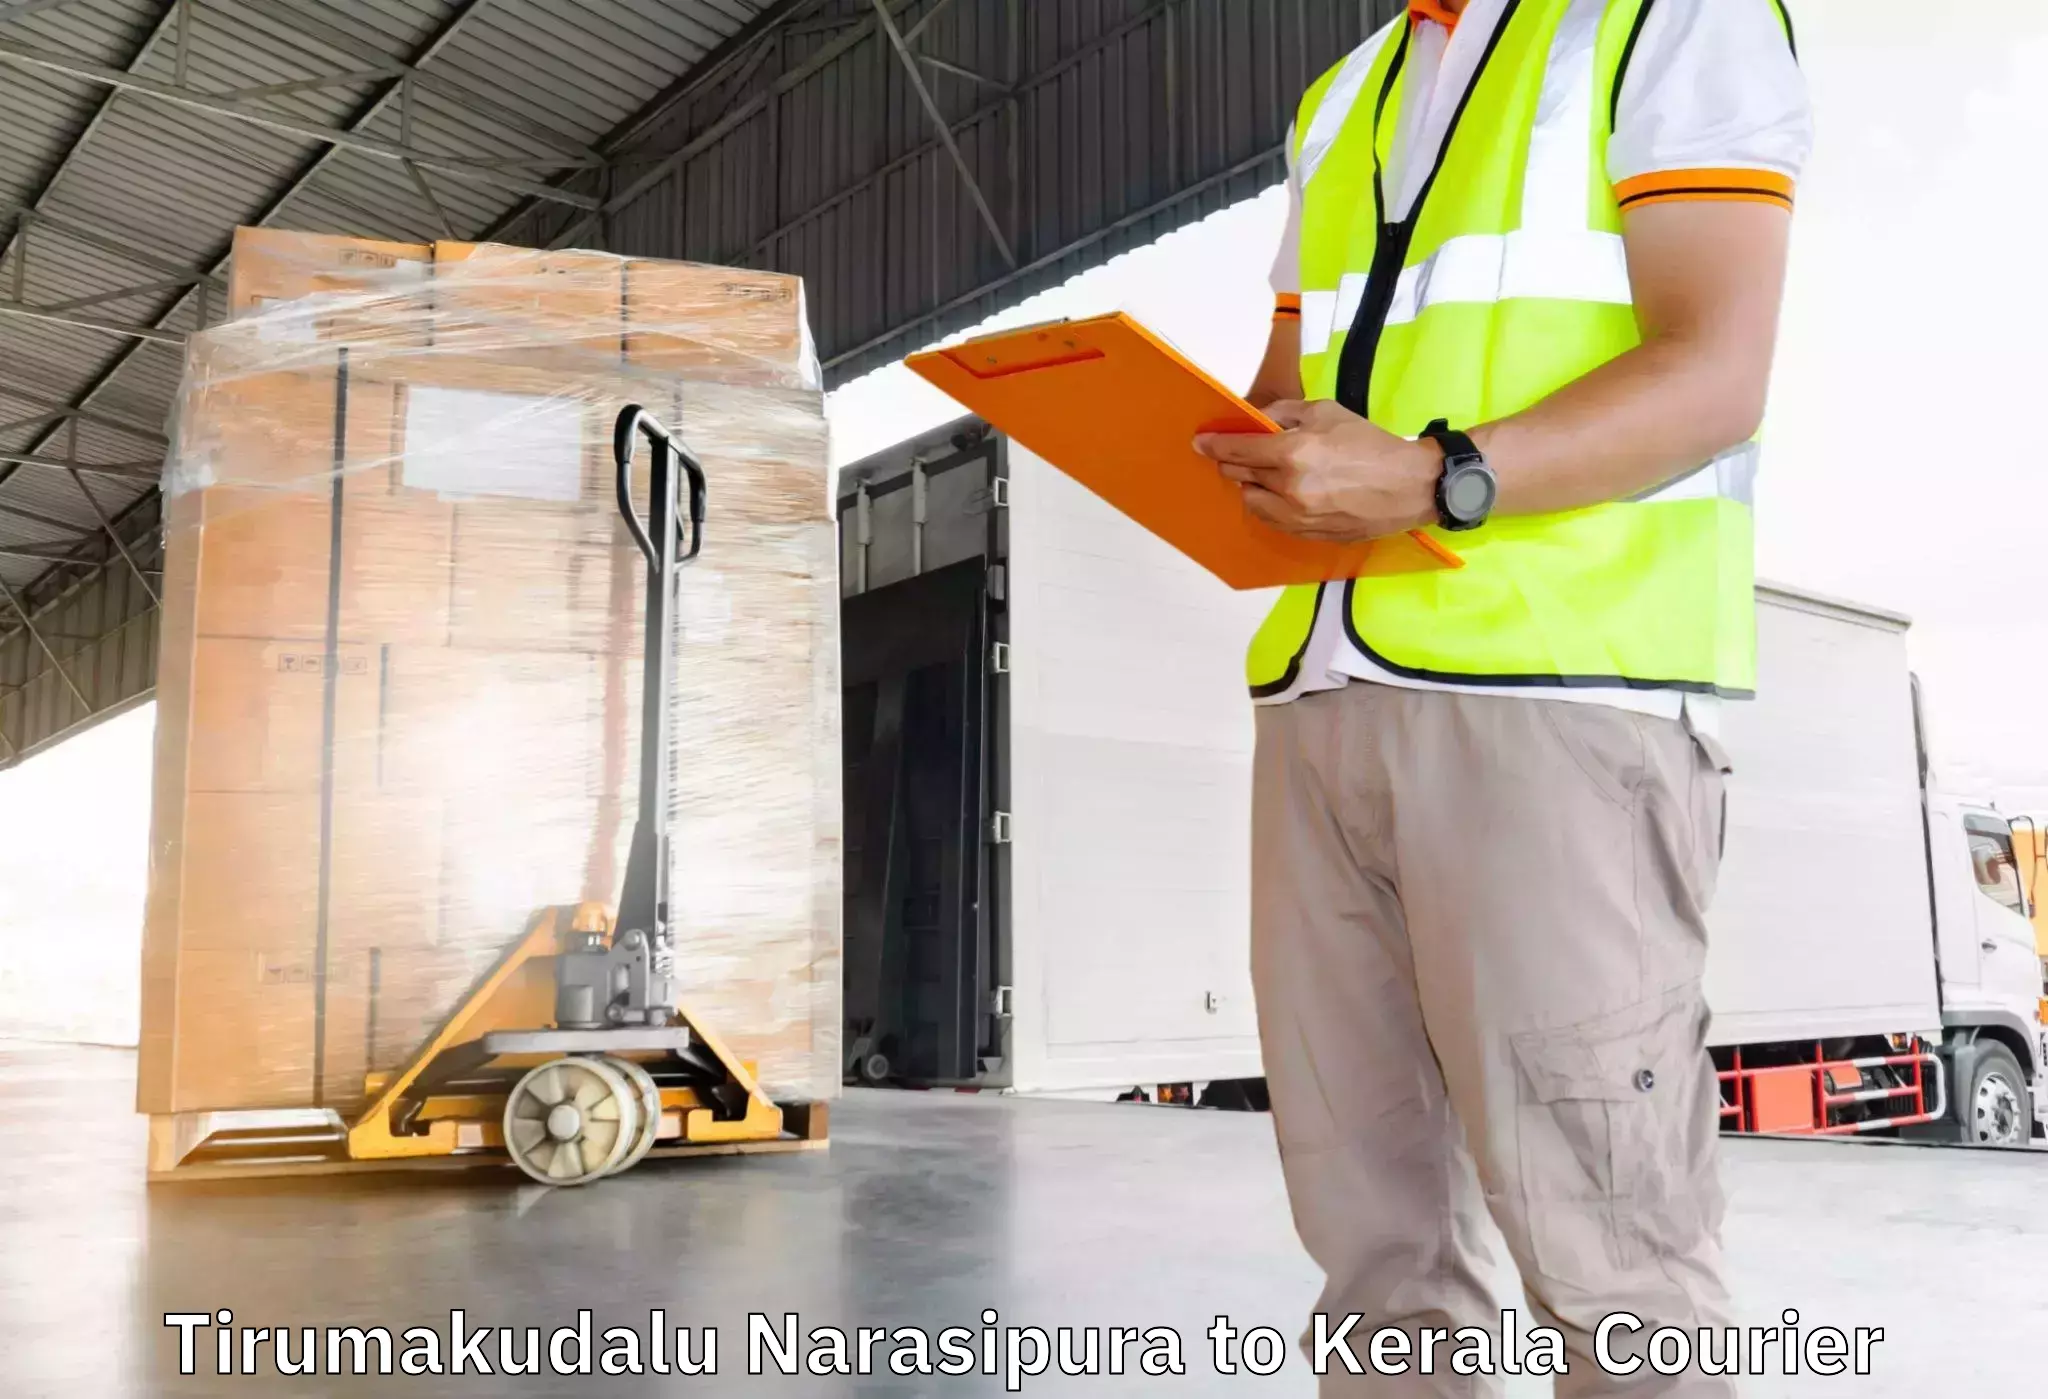 Efficient packing and moving Tirumakudalu Narasipura to Koothattukulam